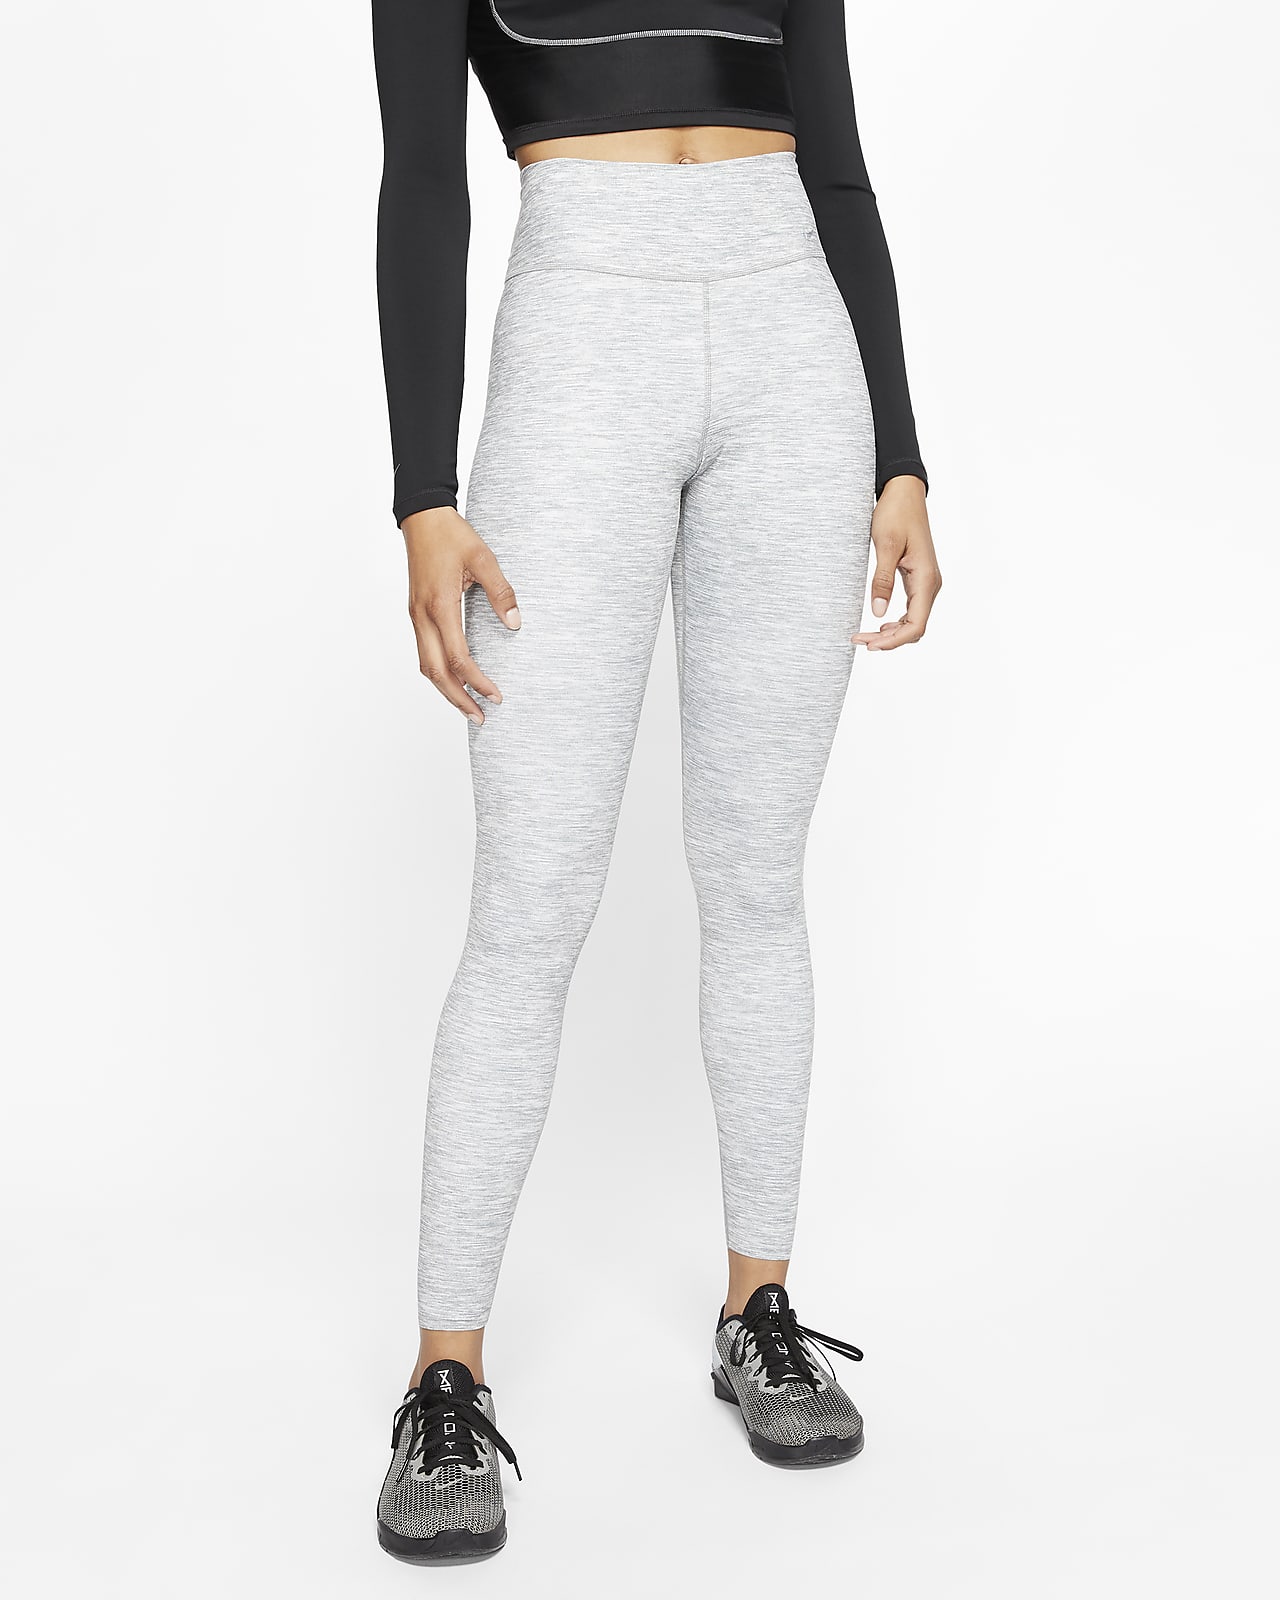 Heathered Mid-Rise Leggings. Nike 